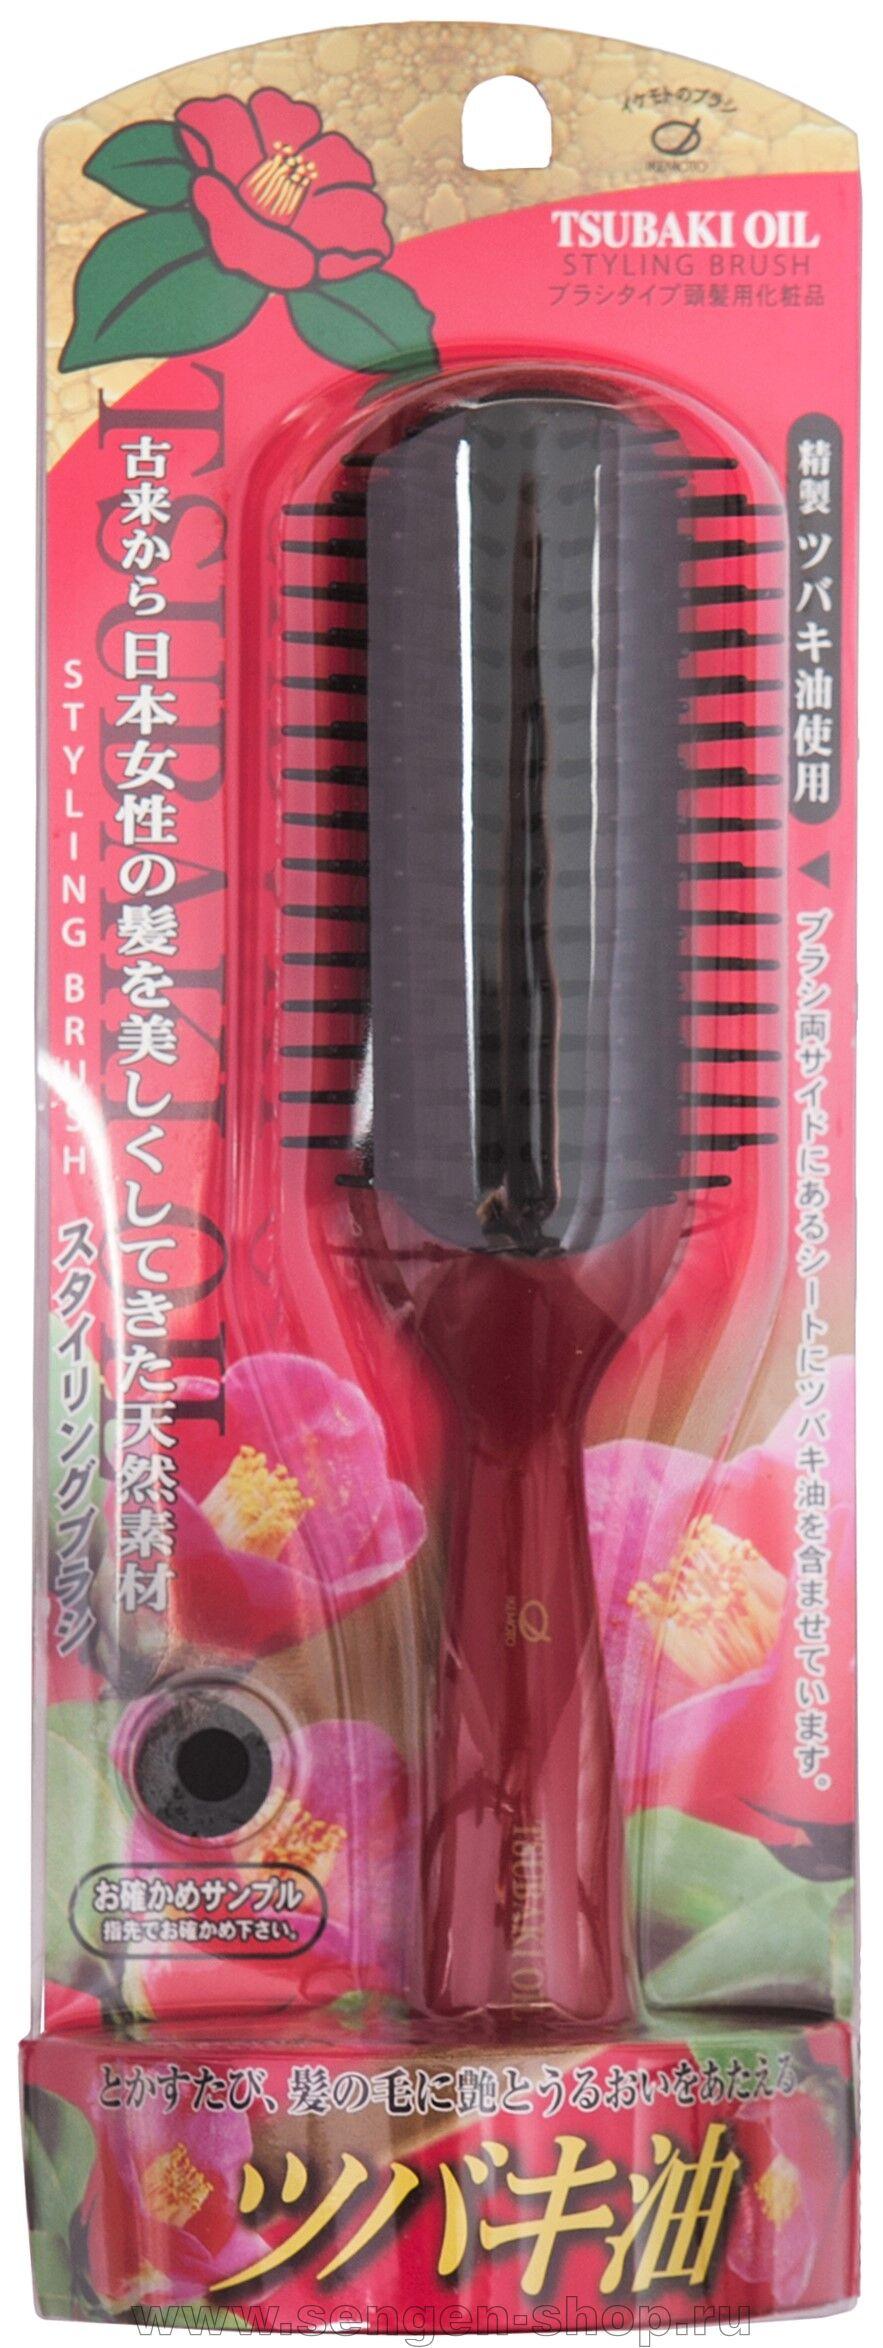 Ikemoto щетка для укладки волос с ароматом розы большая